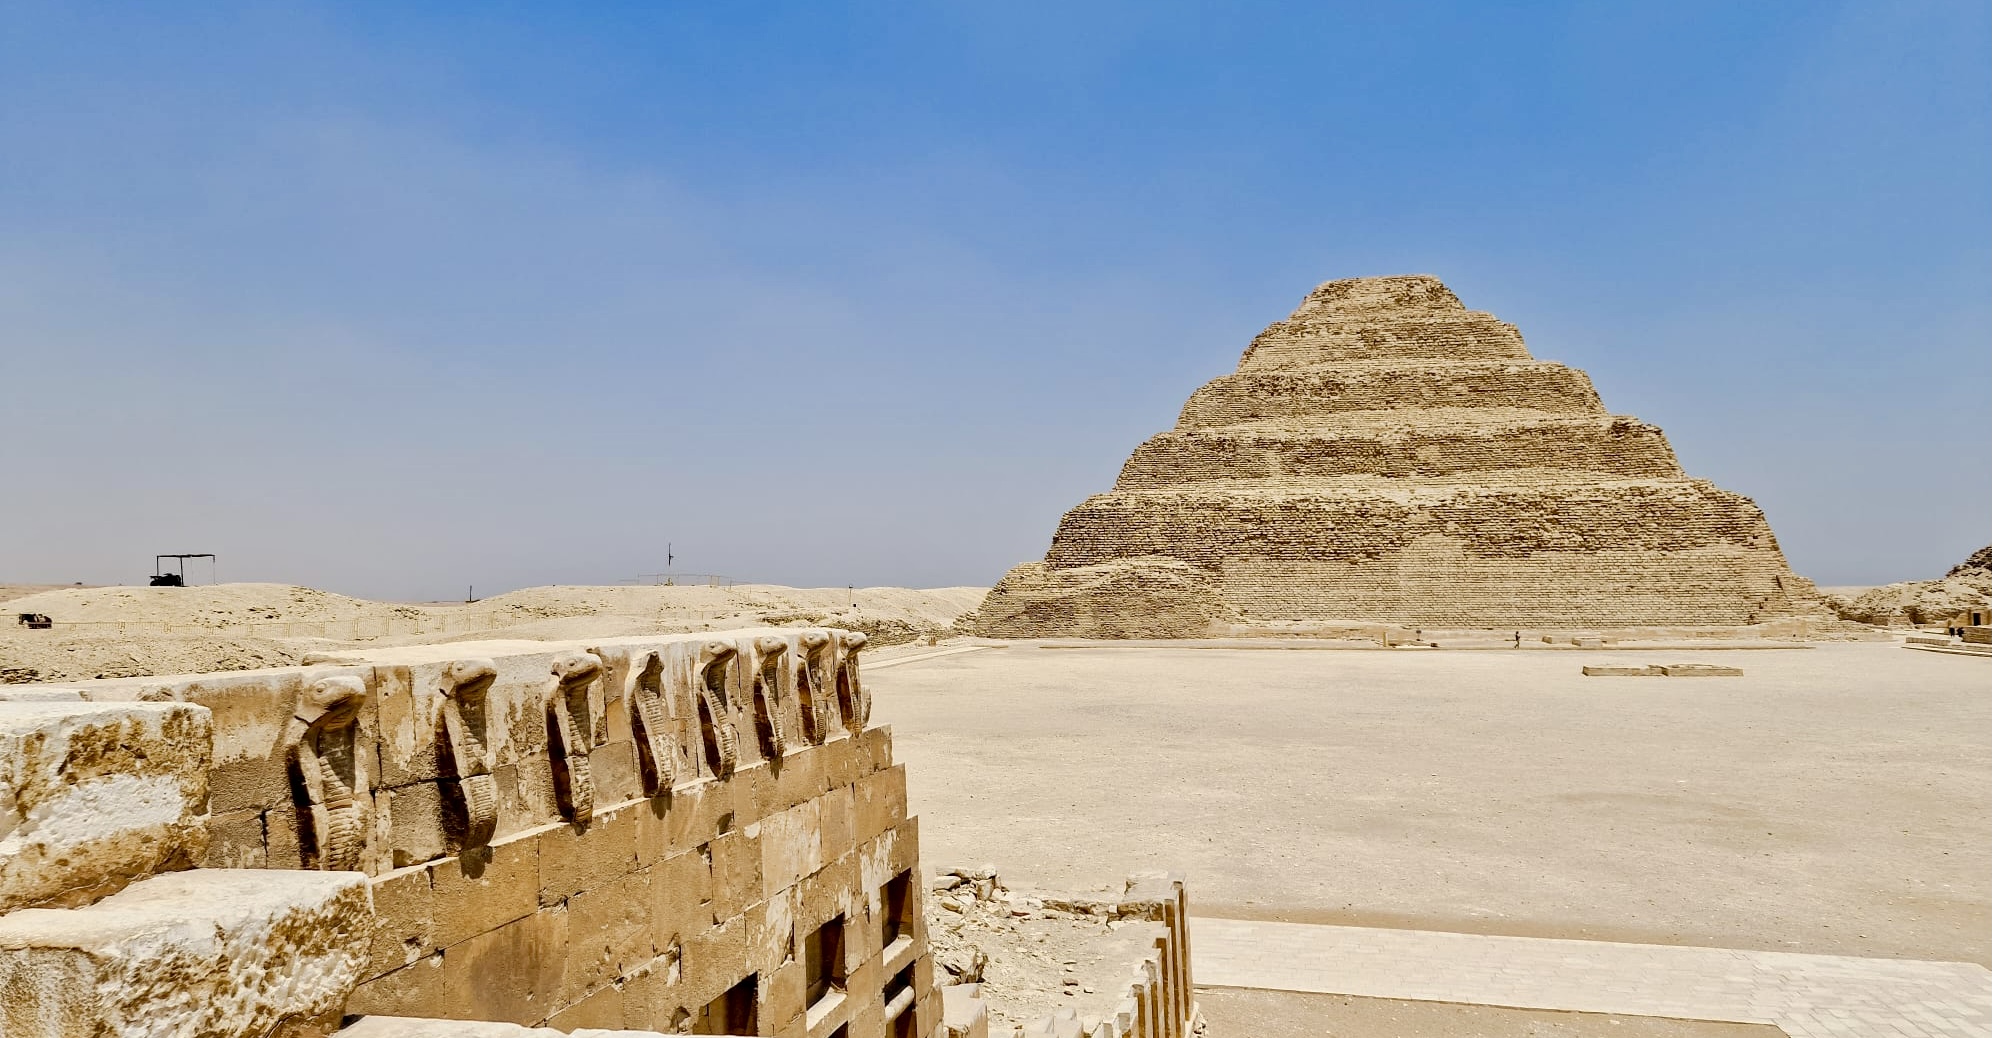 Saqqara, Egitto: intervista esclusiva al dr. Mohammad Youssef, direttore del famoso sito archeologico